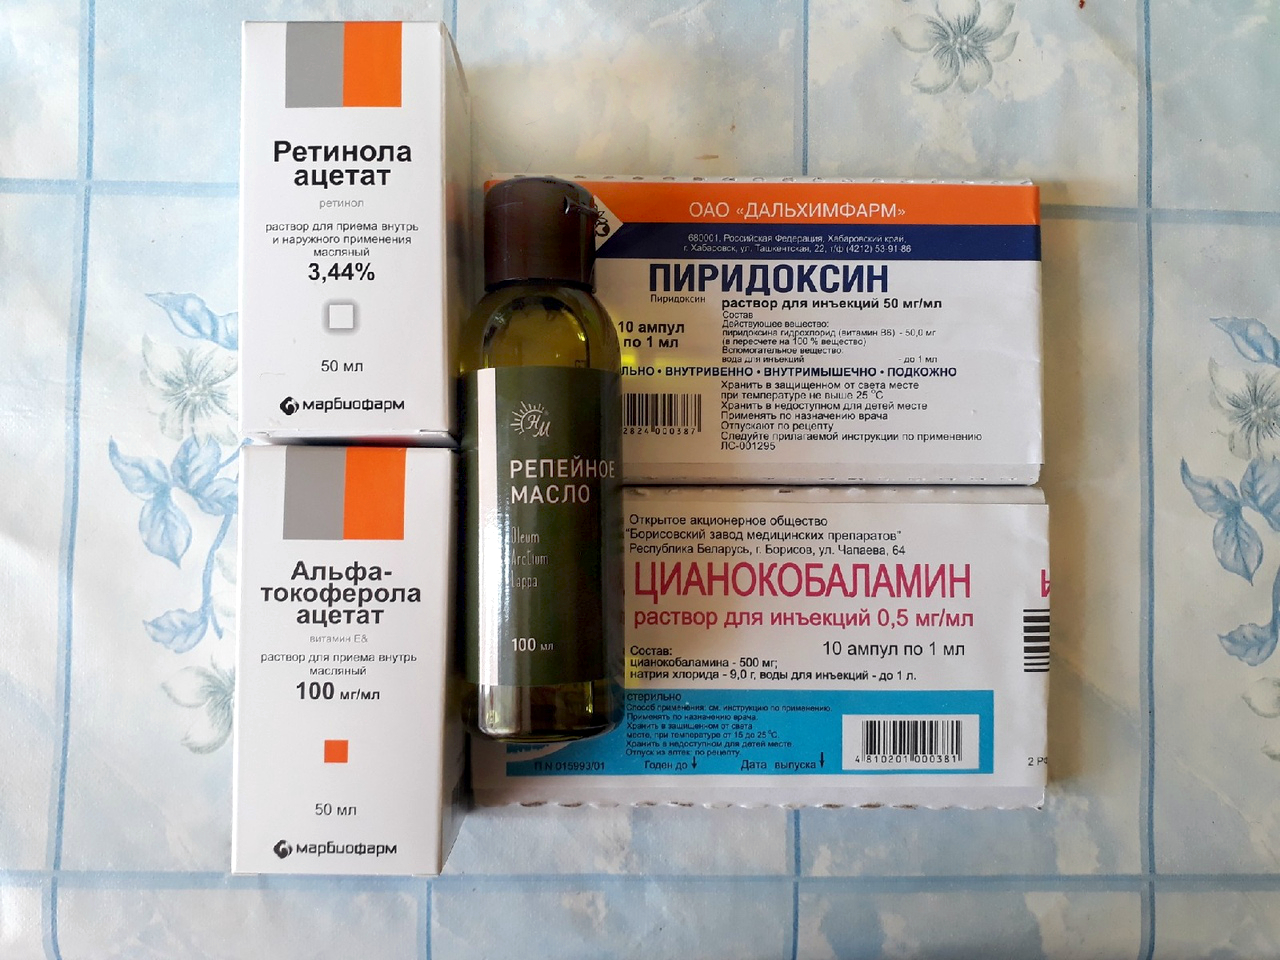 Как правильно использовать аптечные витамины в ампулах для волос | volosomanjaki.com